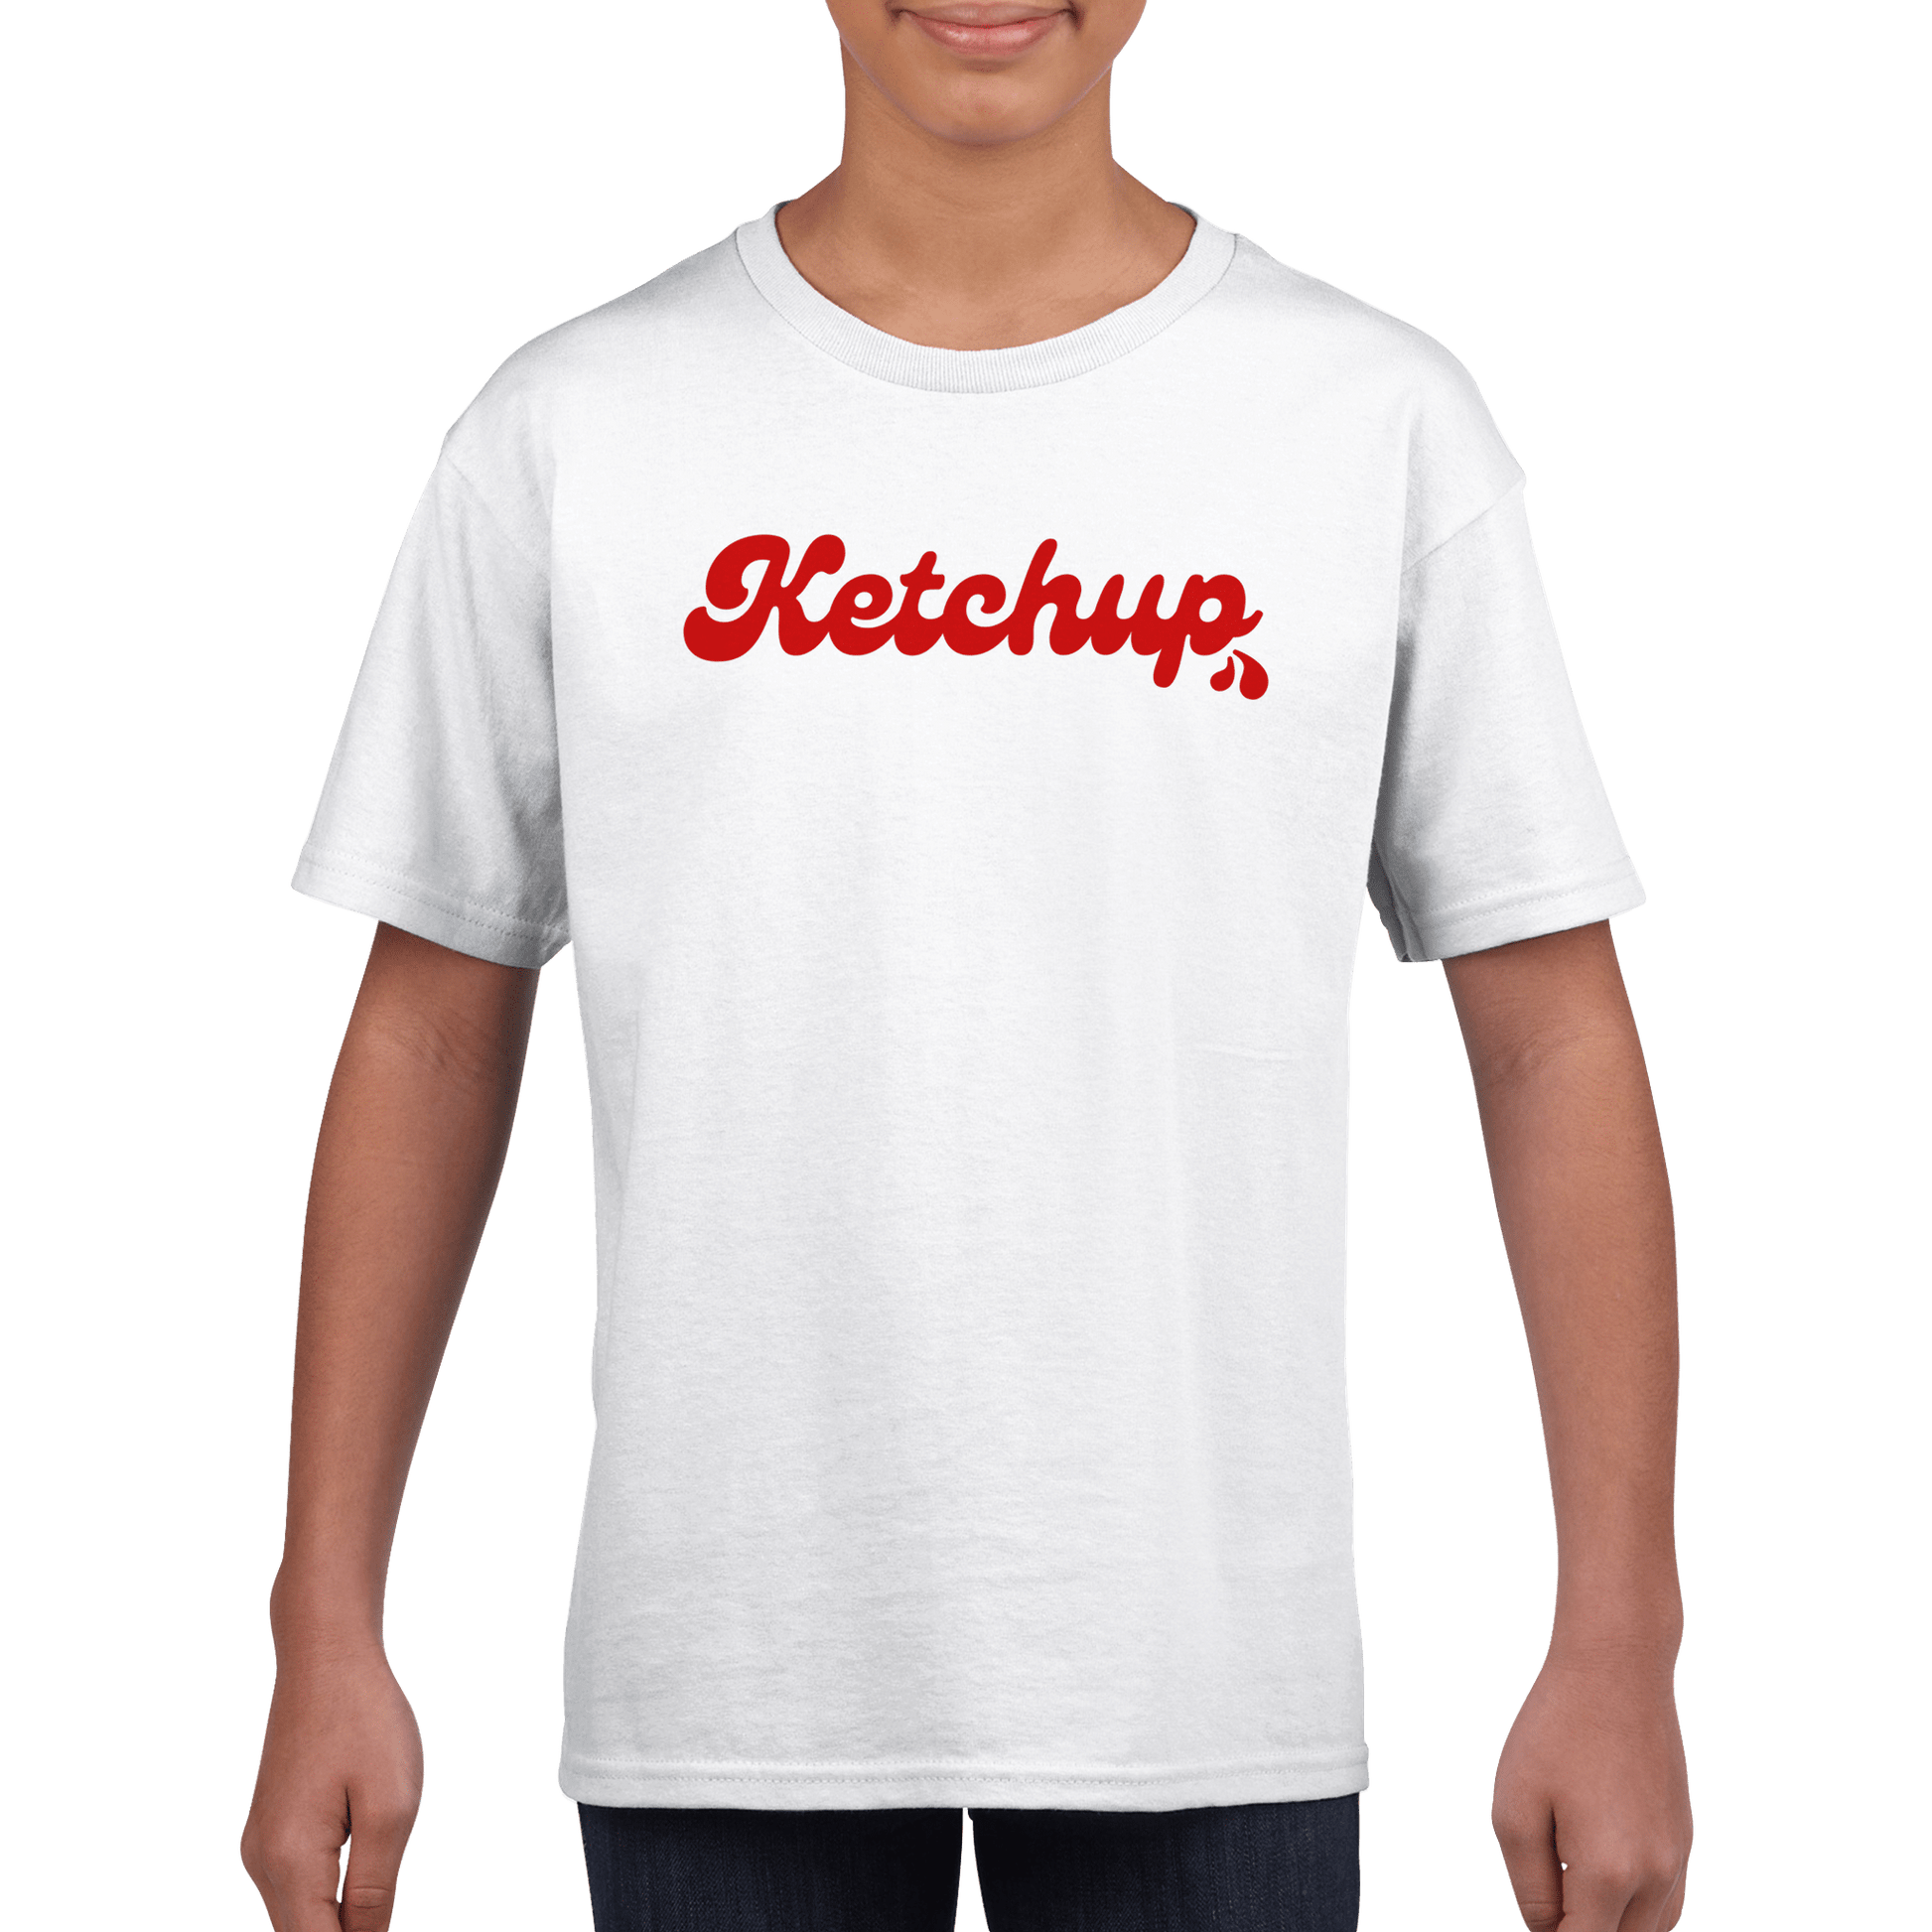 Ketchup - T-shirt för barn 